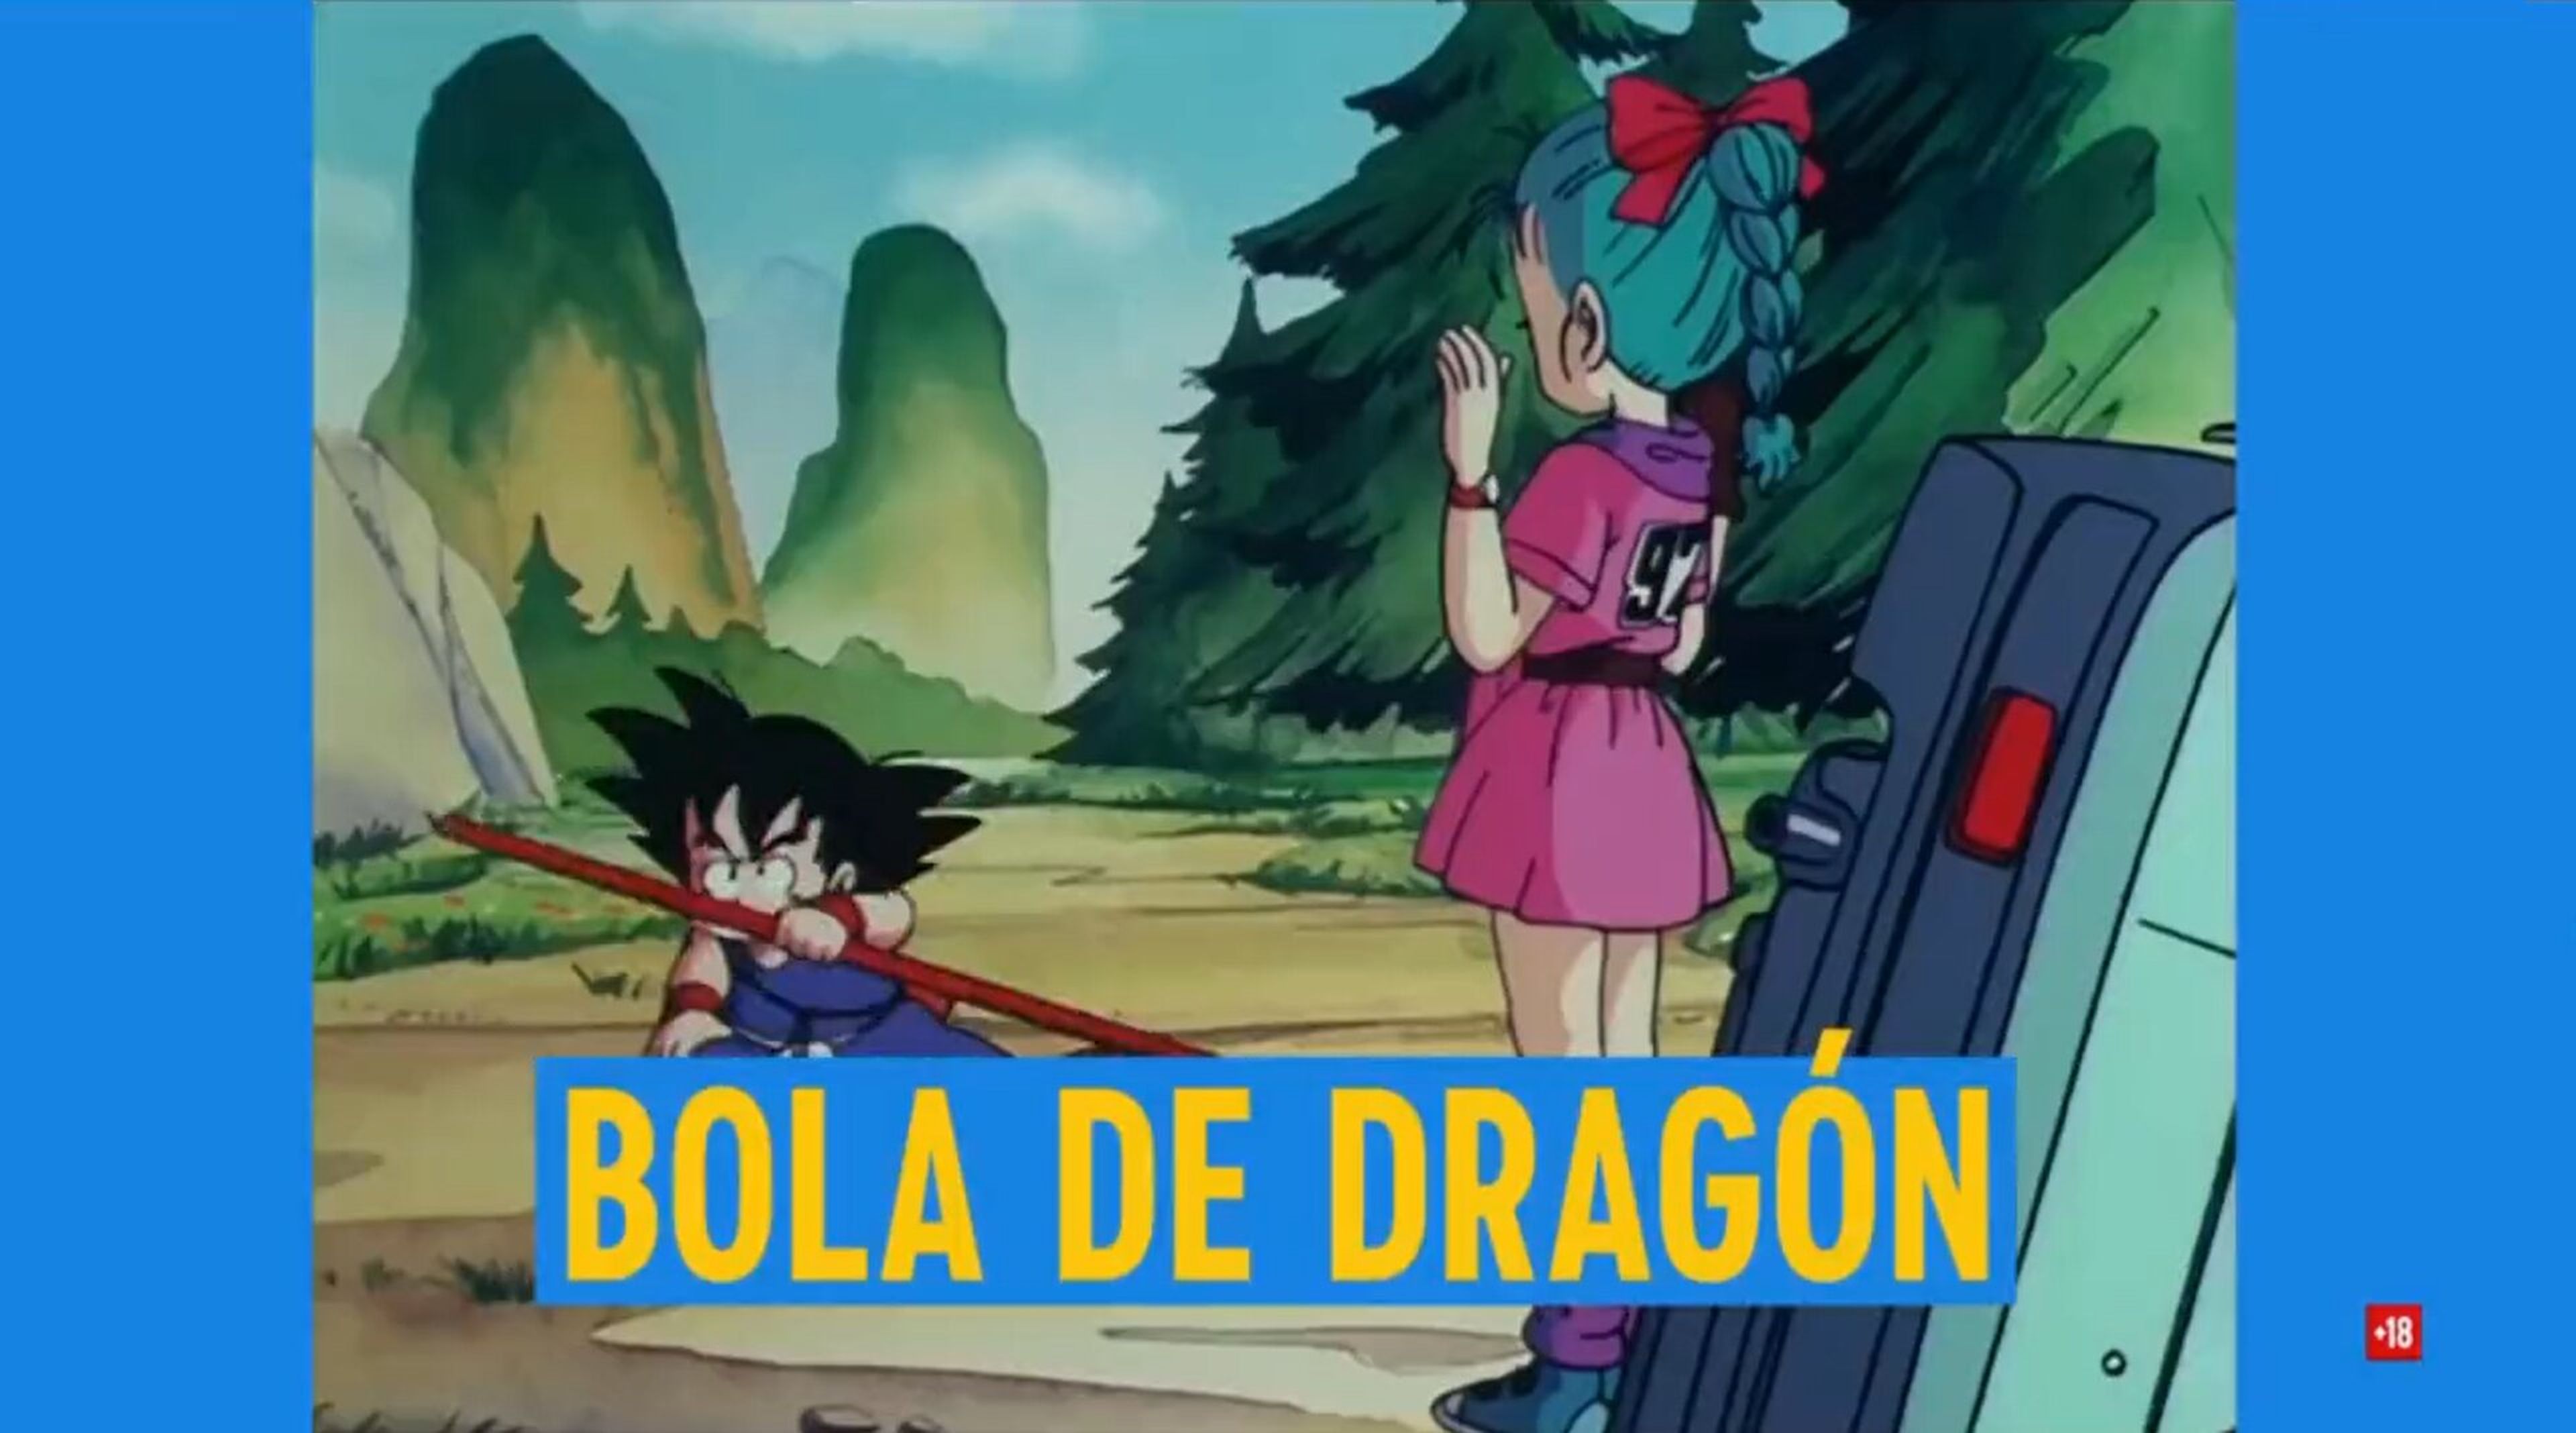 Dragon Ball regresa a España - La serie original se volverá a emitir en televisión gracias a Comedy Central